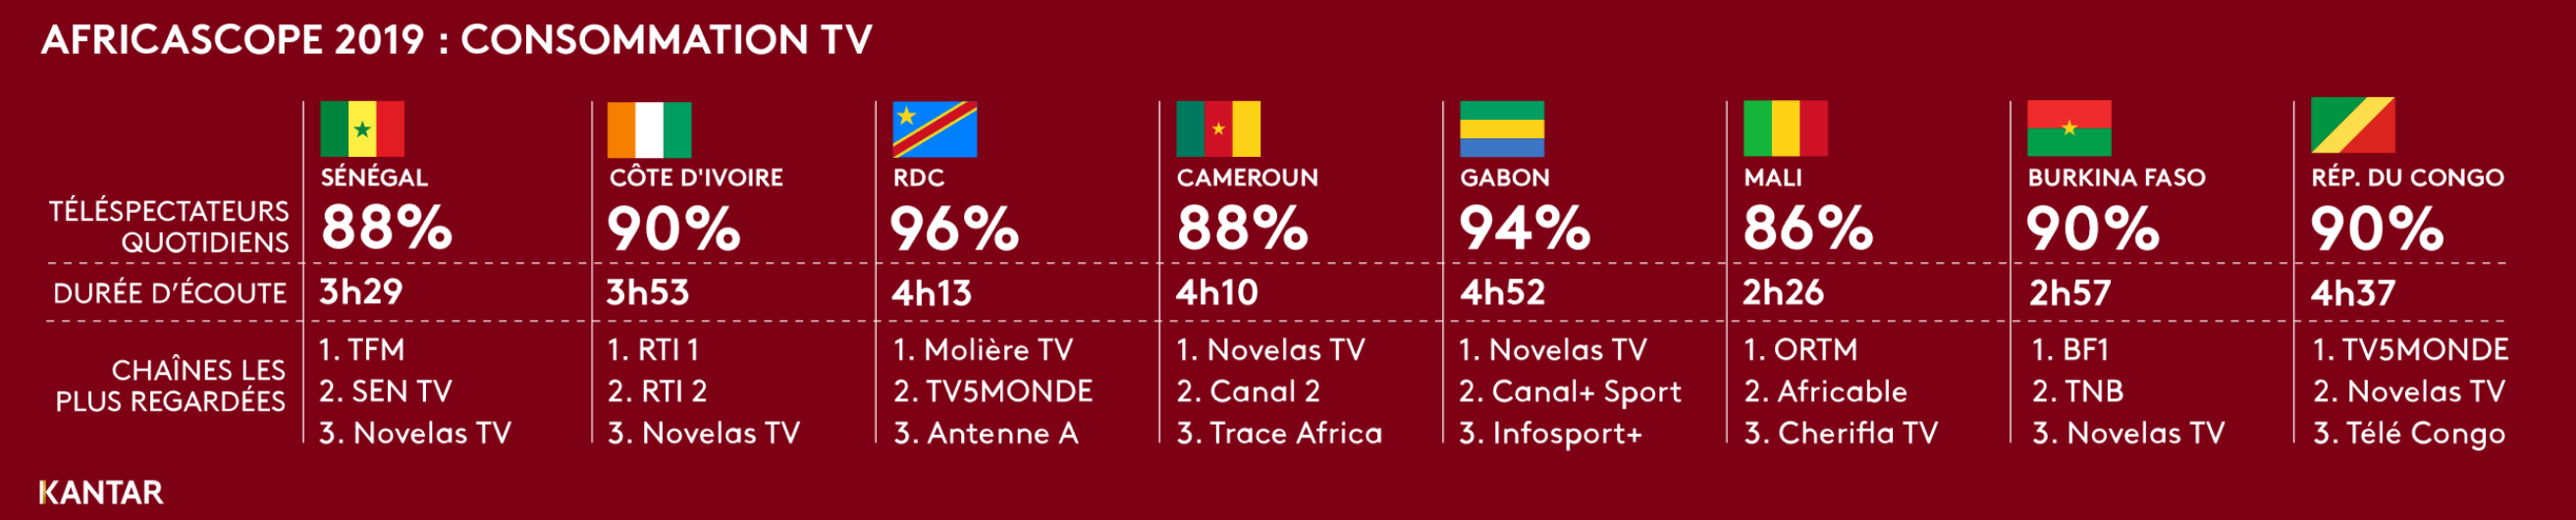 Détail des durées d'écoute total TV et top 3 audience veille par pays